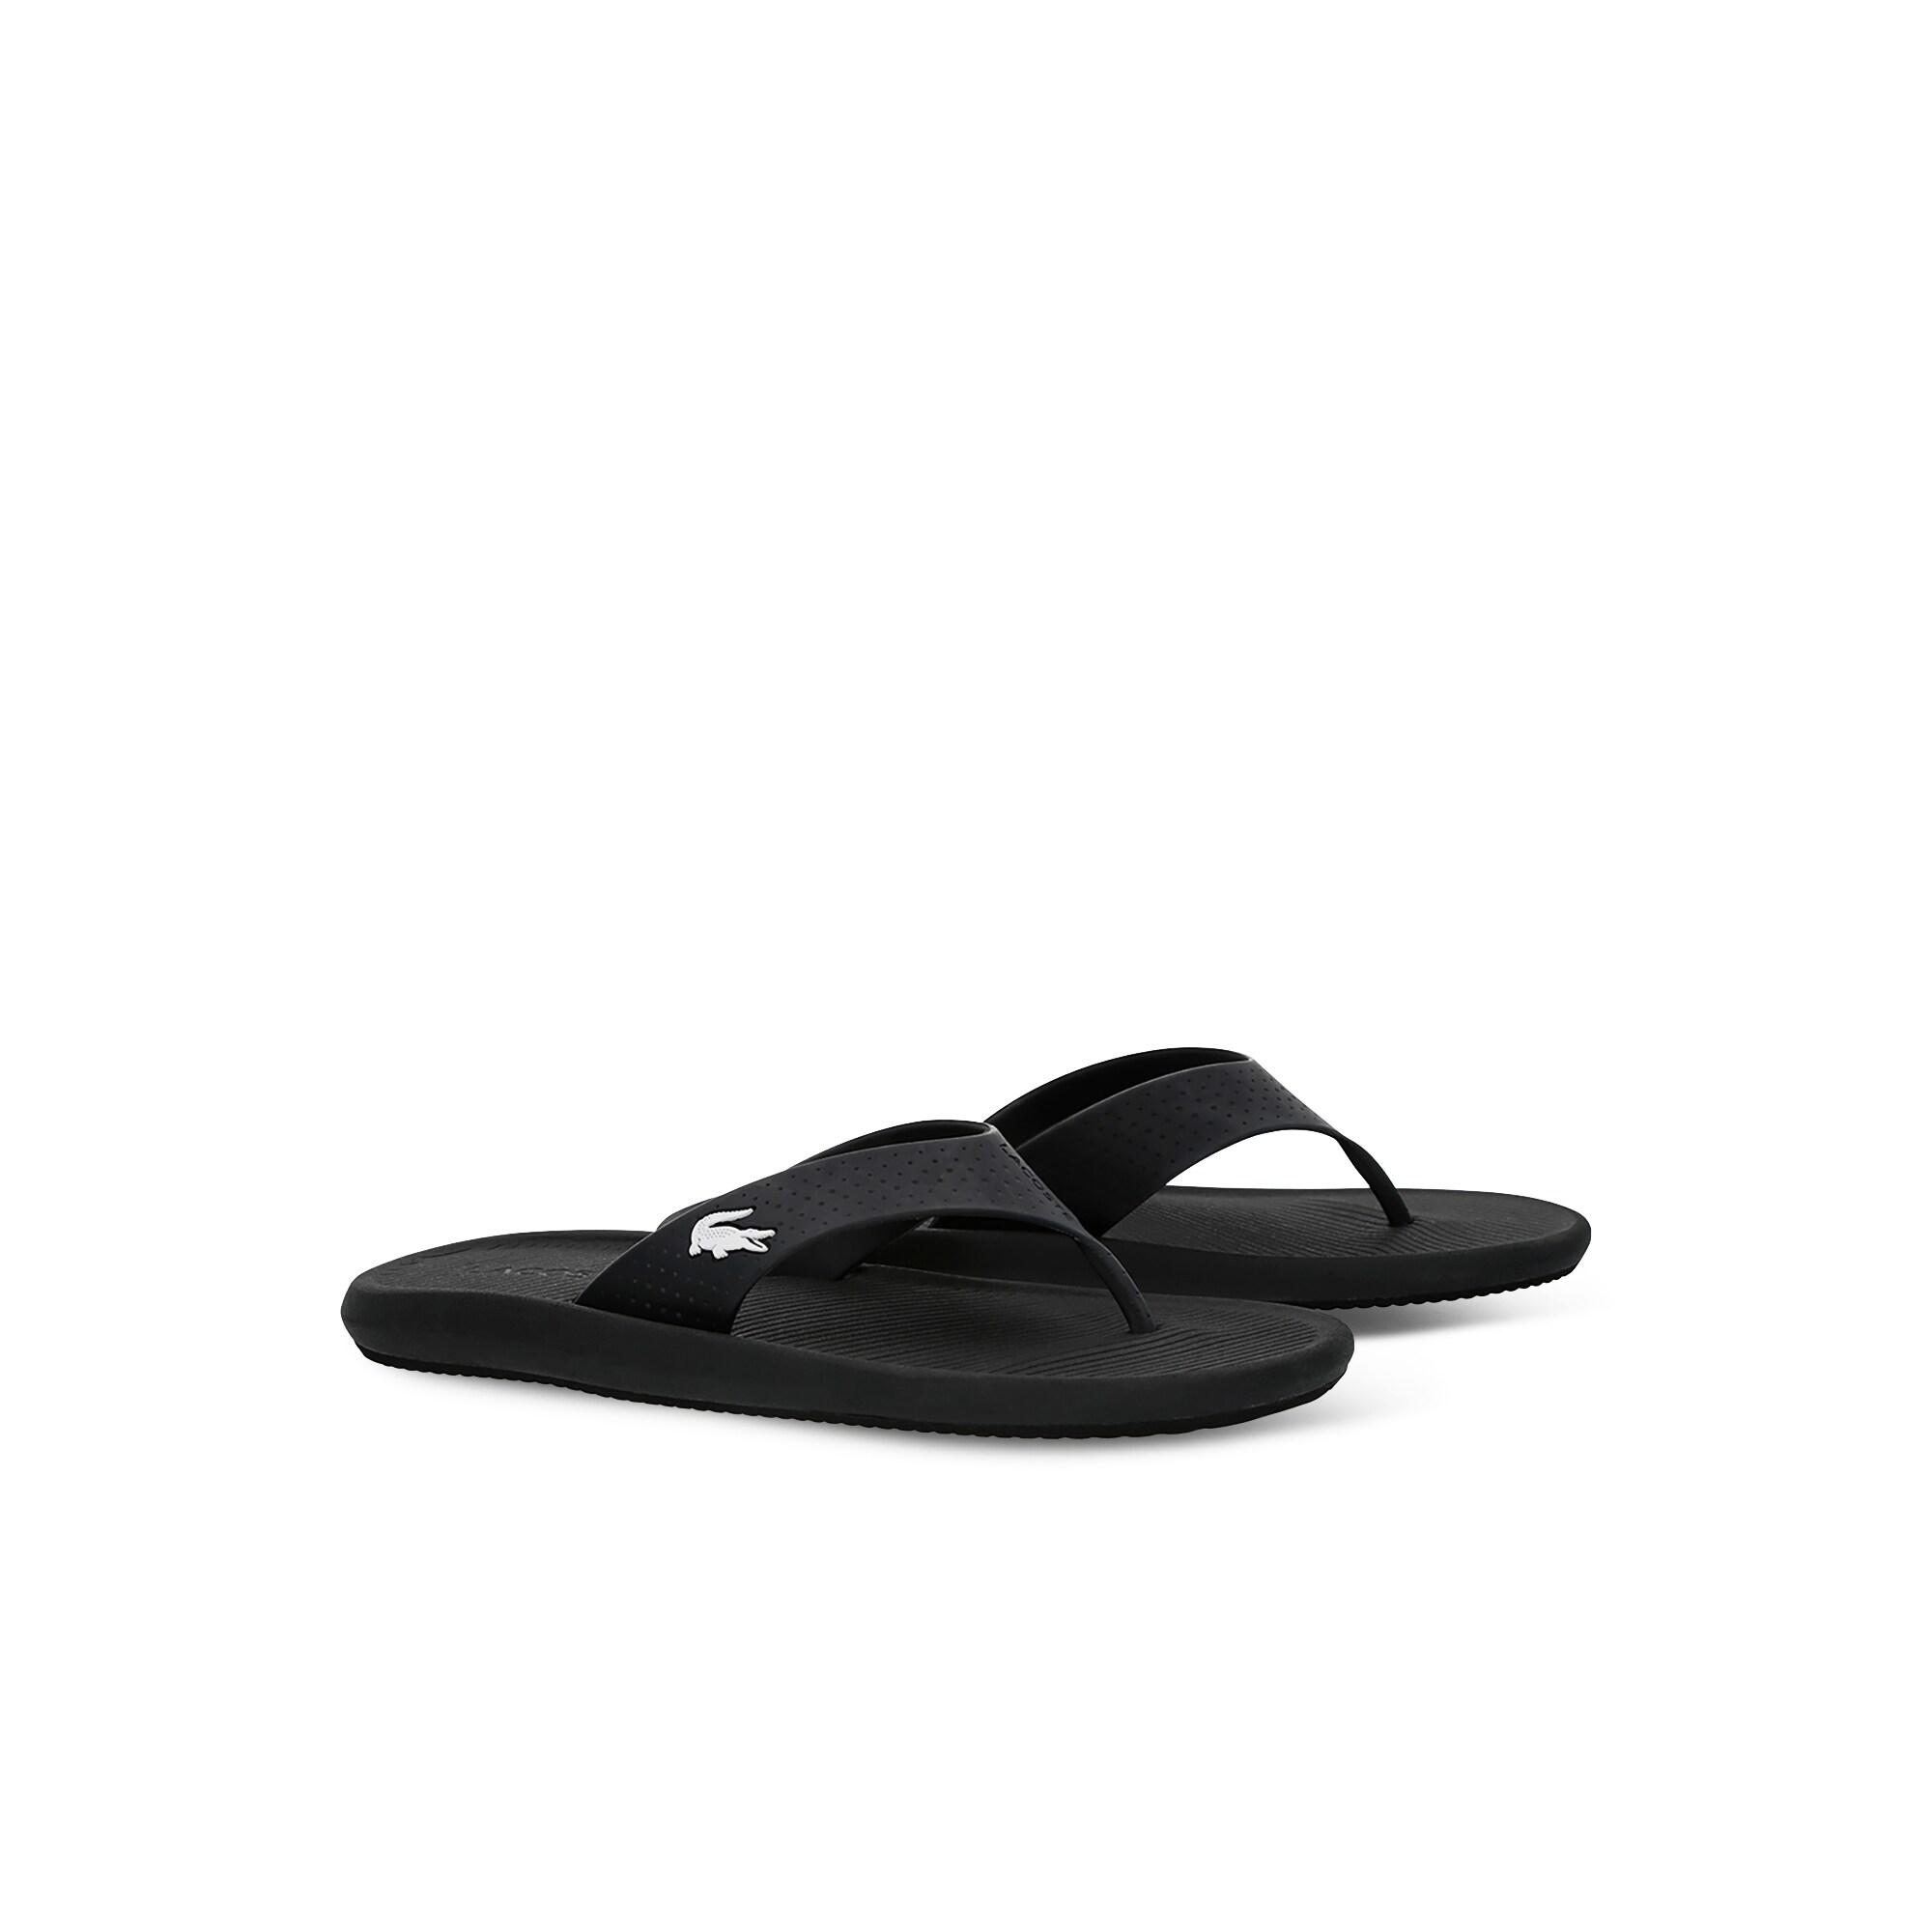 Lacoste Croco Sandal 219 1 Cma Erkek Siyah - Beyaz Terlik. 3